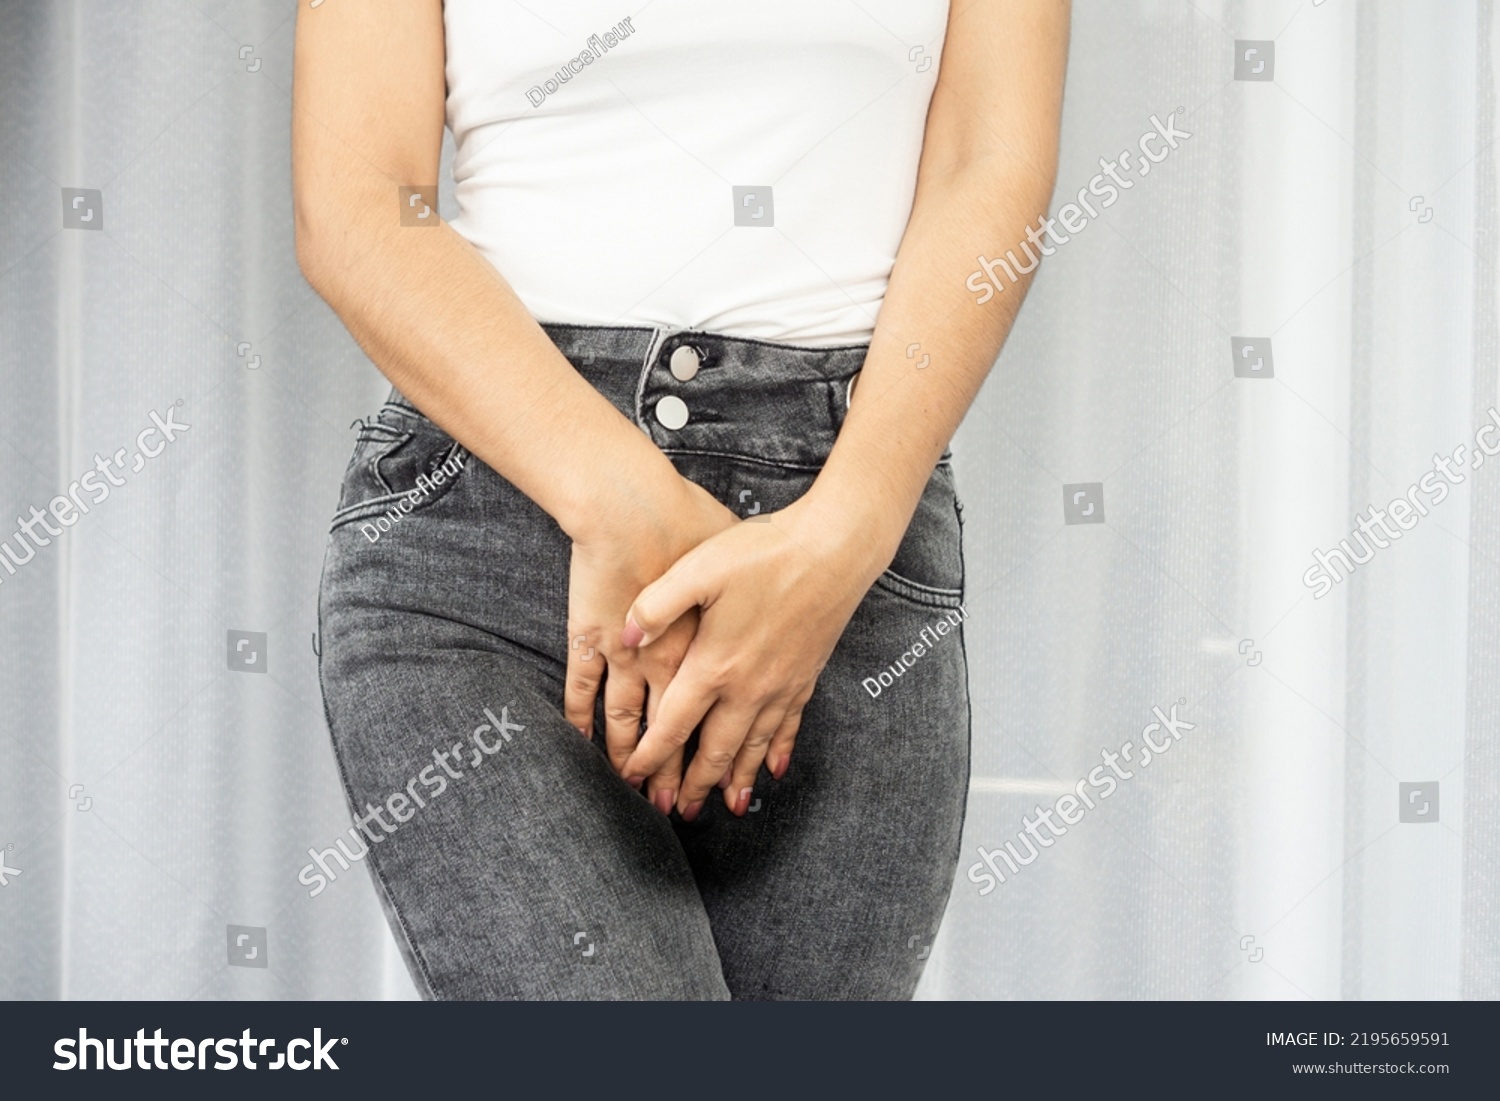 alexandros fragkos add women peeing their pants photo